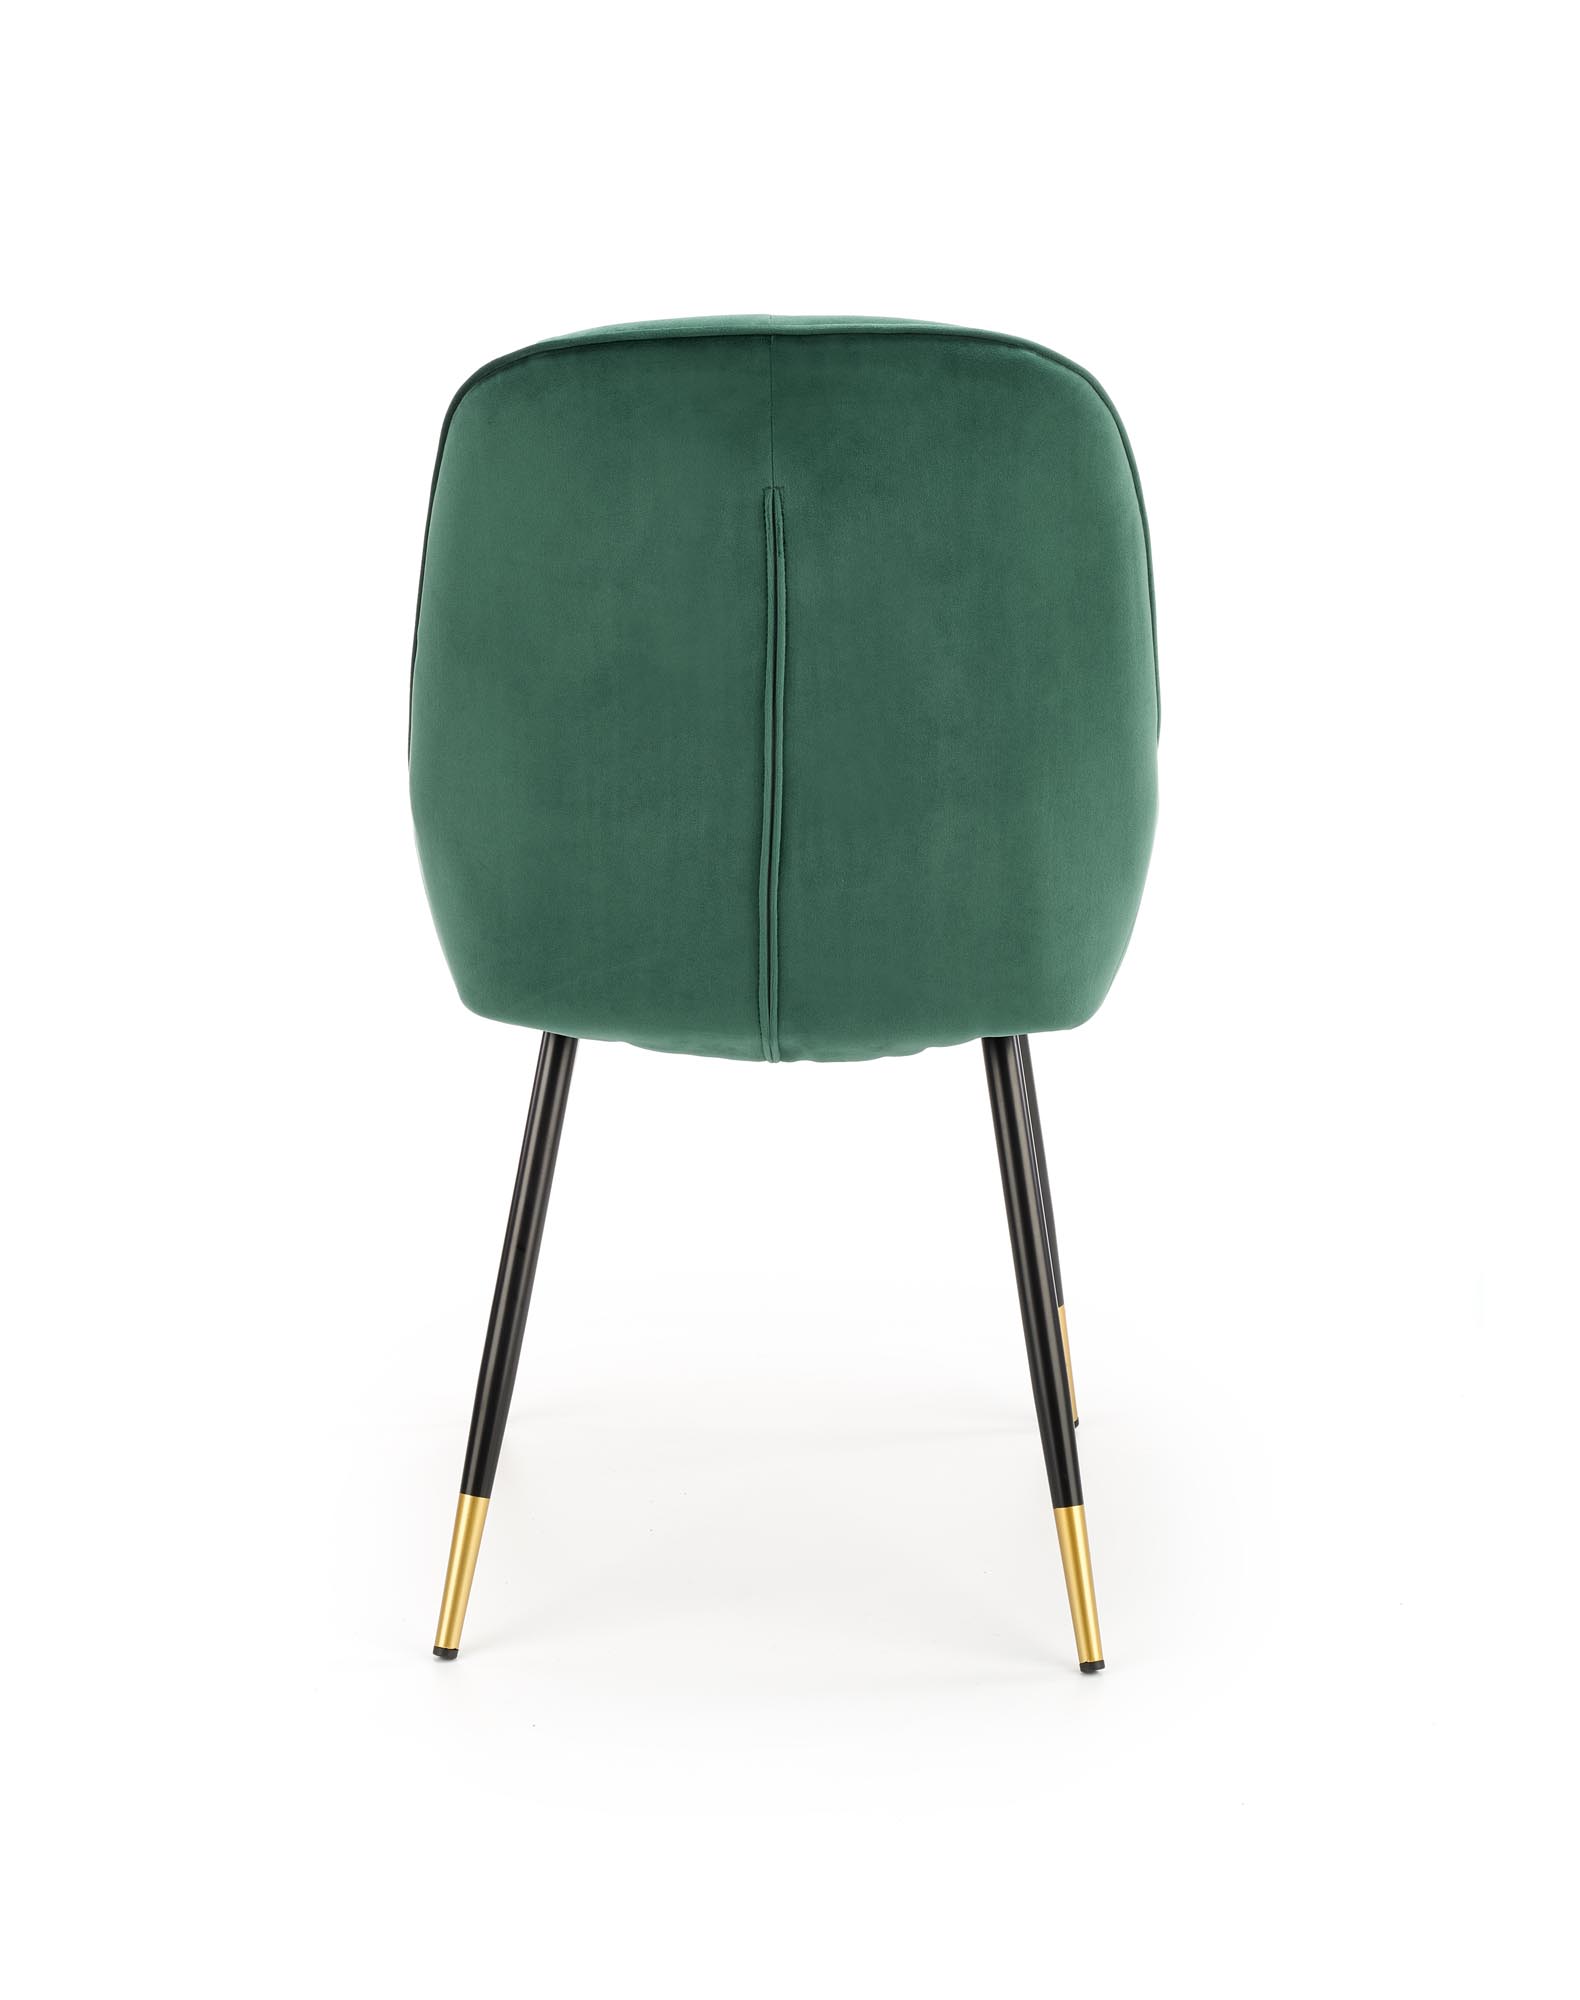 K437 krzesło ciemny zielony k437 krzesło ciemny zielony